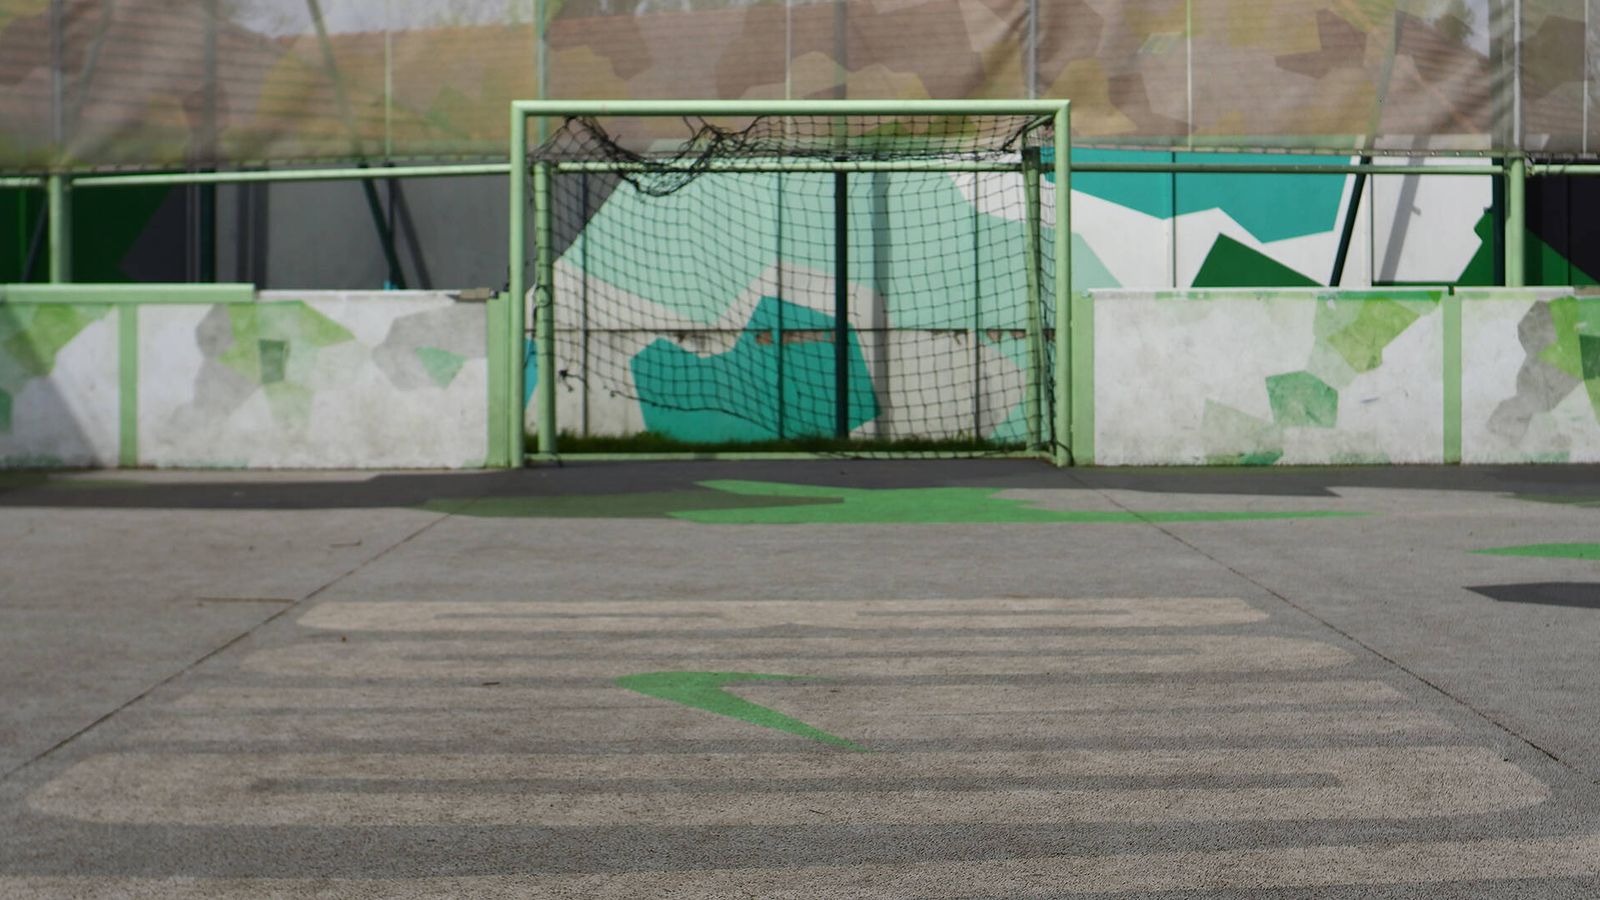 Campo de fútbol callejero Mbappé x Nike en Bondy, vacío durante la mañana escolar. (Á. F. C.)